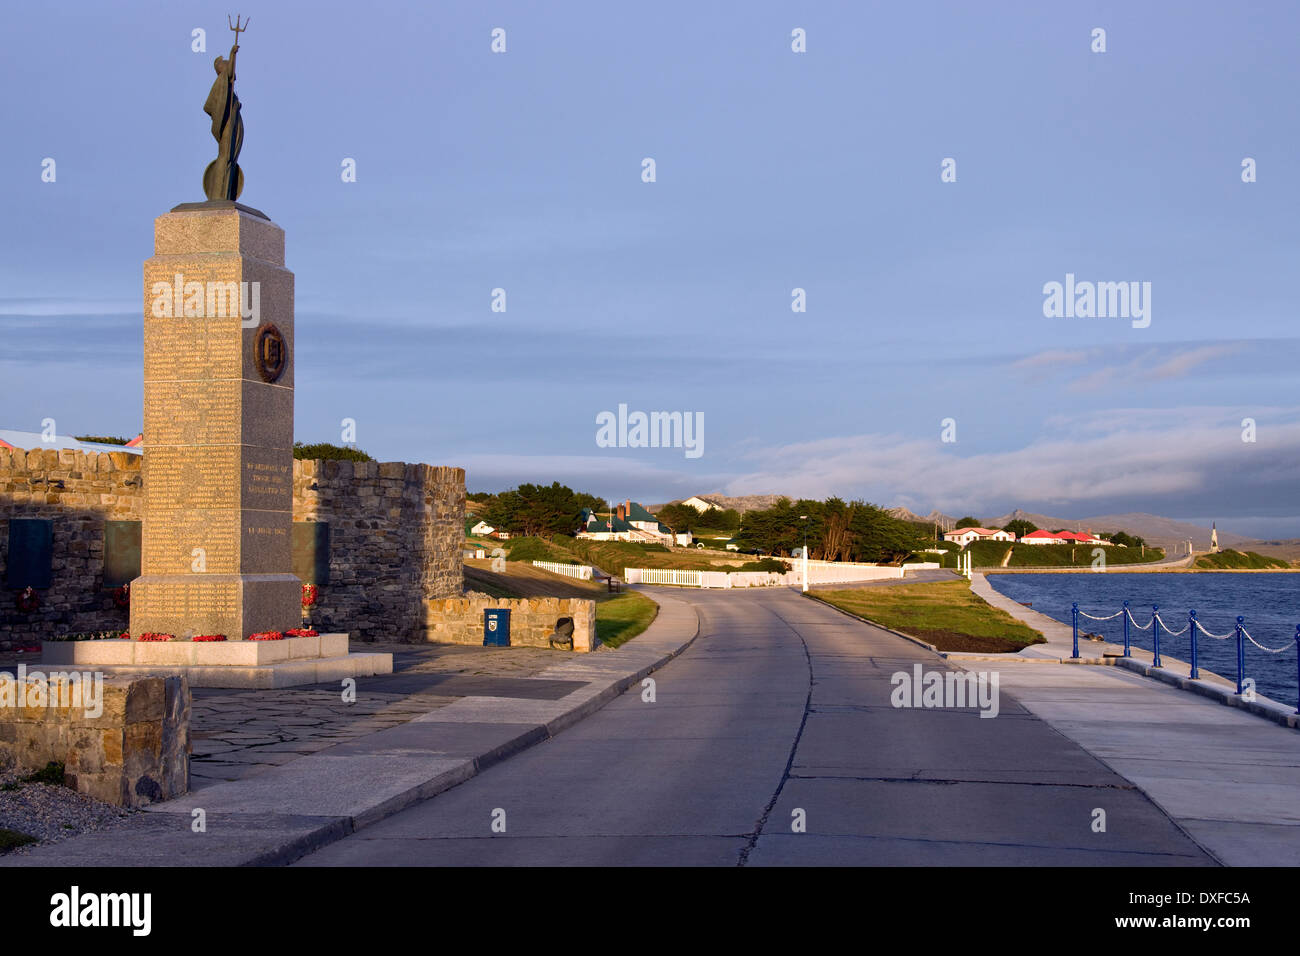 La guerre des Malouines avec mémorial du Gouverneur à l'arrière-plan - Port Stanley dans les îles Falkland (Malouines). Banque D'Images